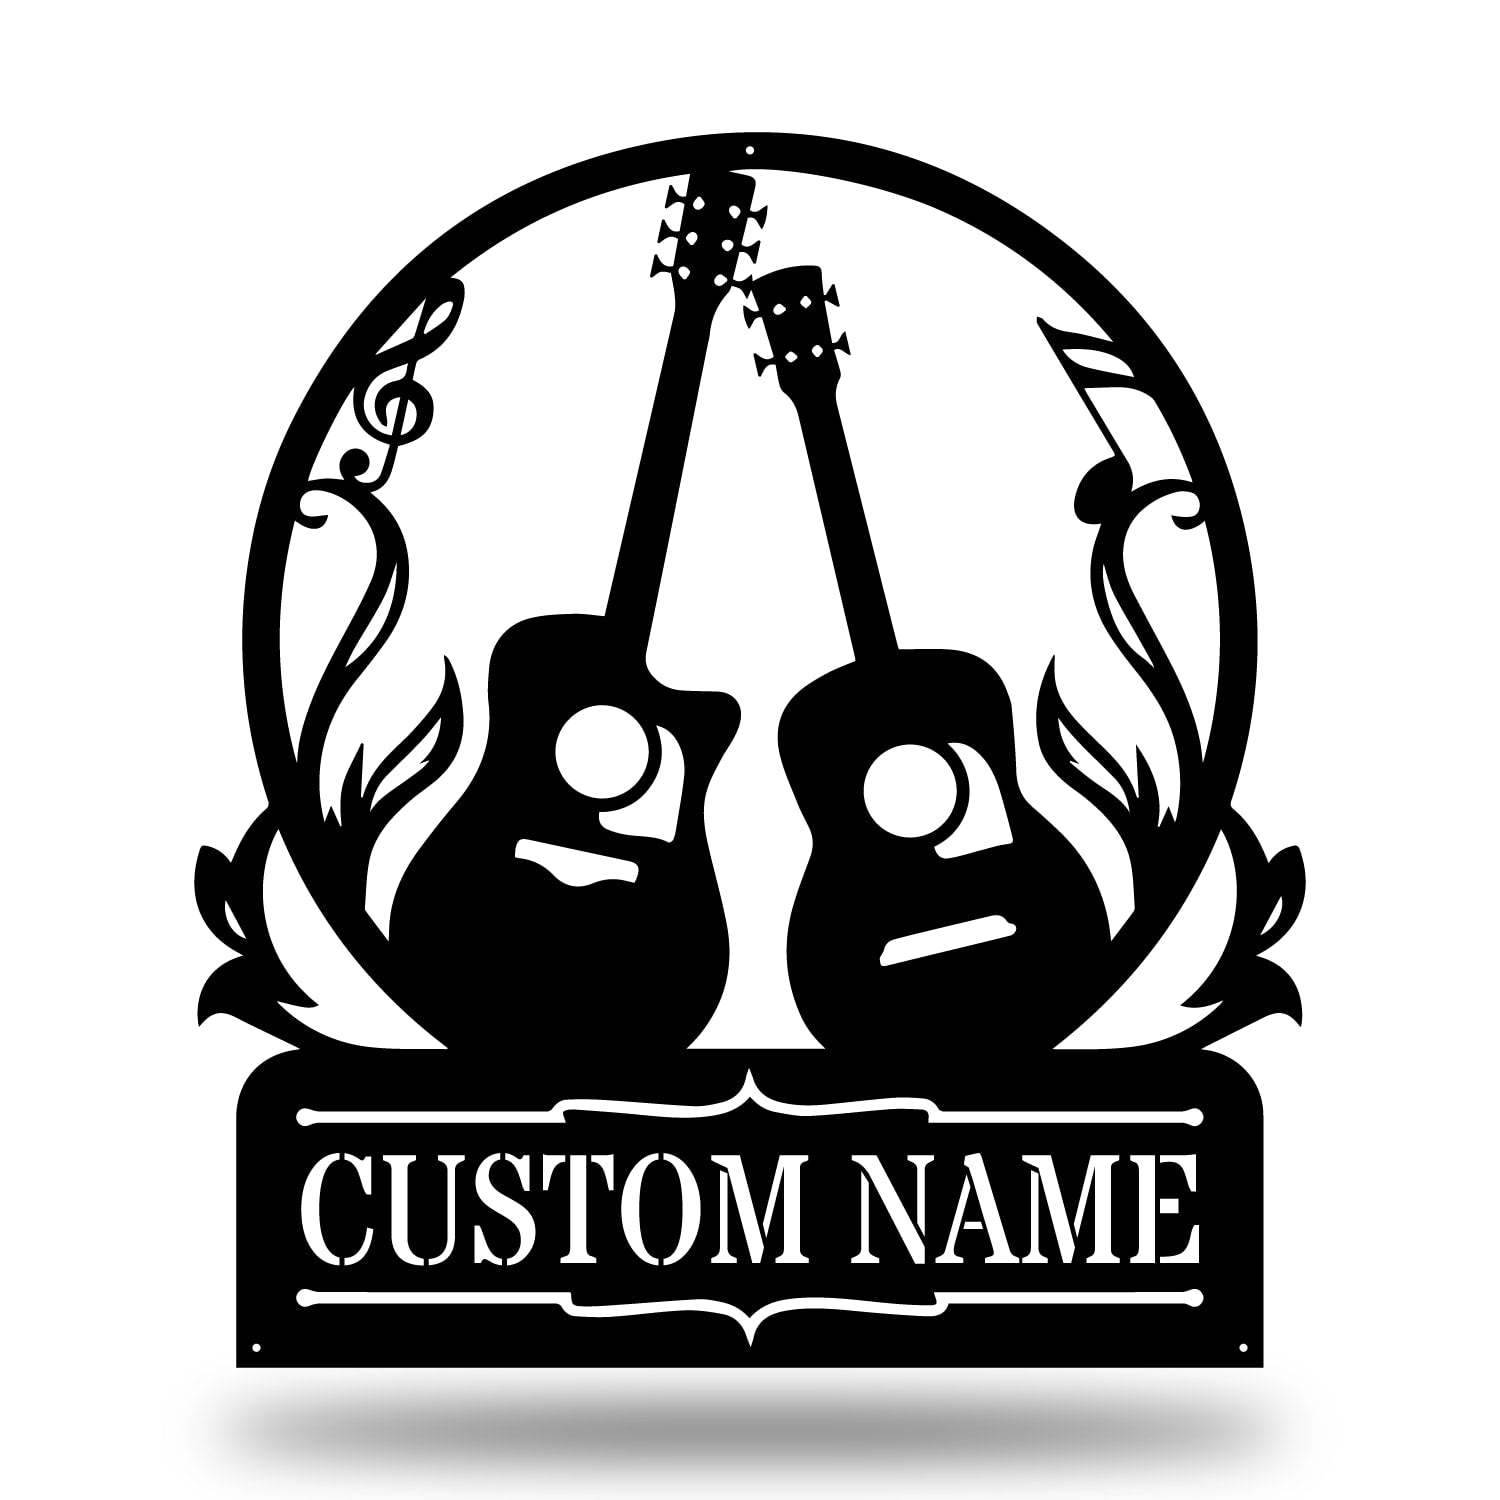 Custom Guitars Metal Sign - Guitars Monogram - Wall Decor Metal Art - Metal Signs For Home